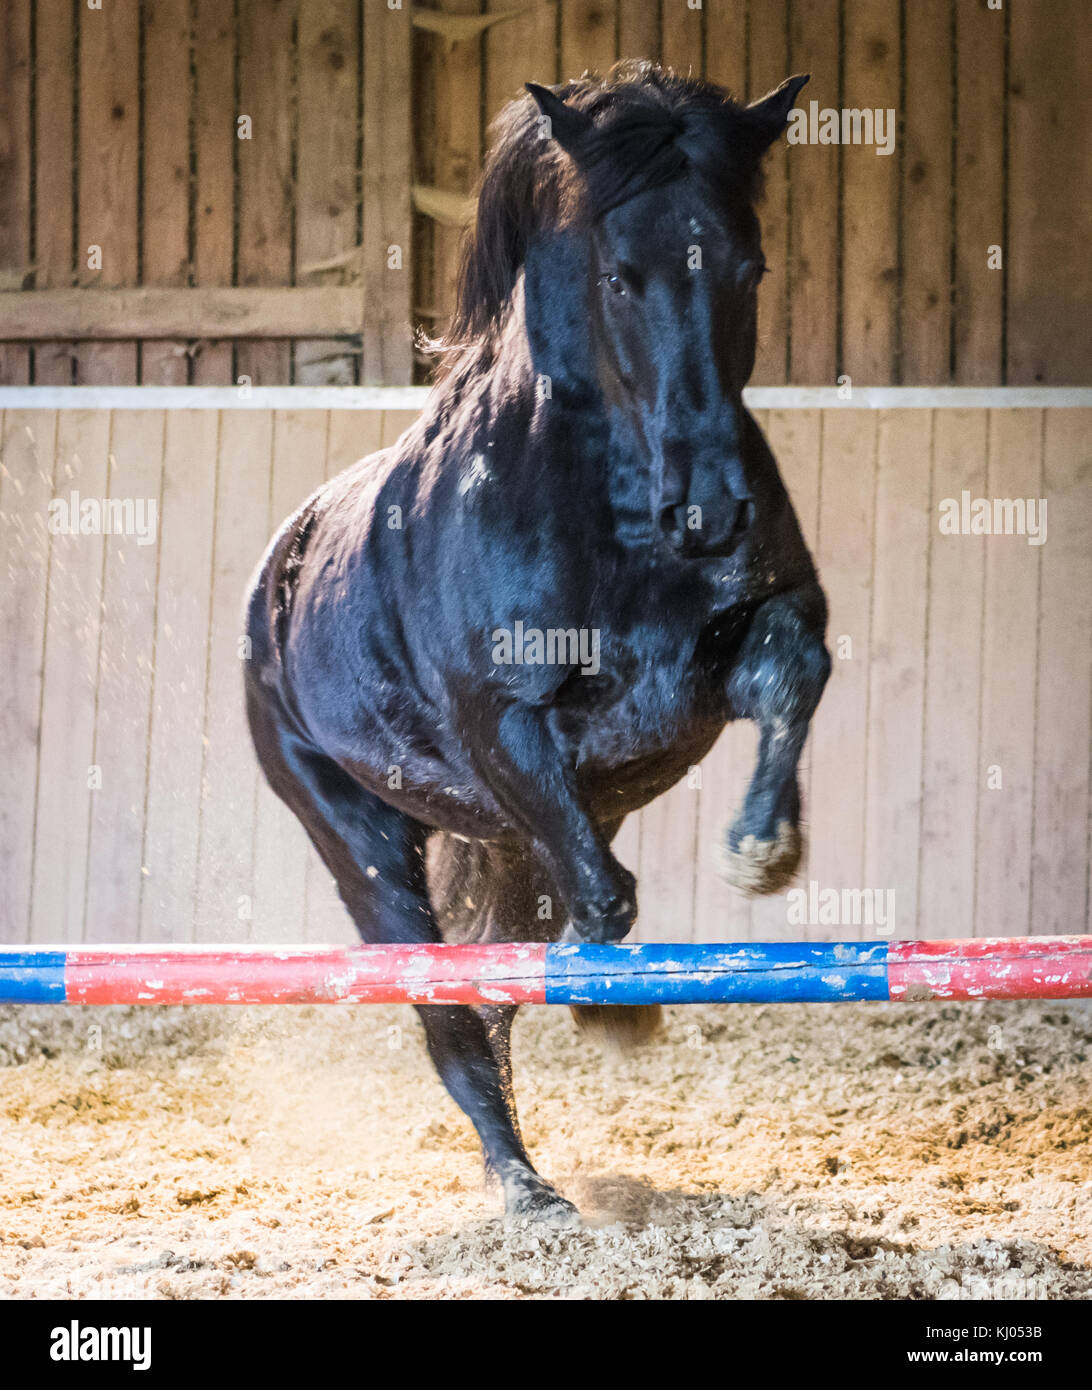 Black Arabian Horse jumping in arena Foto Stock